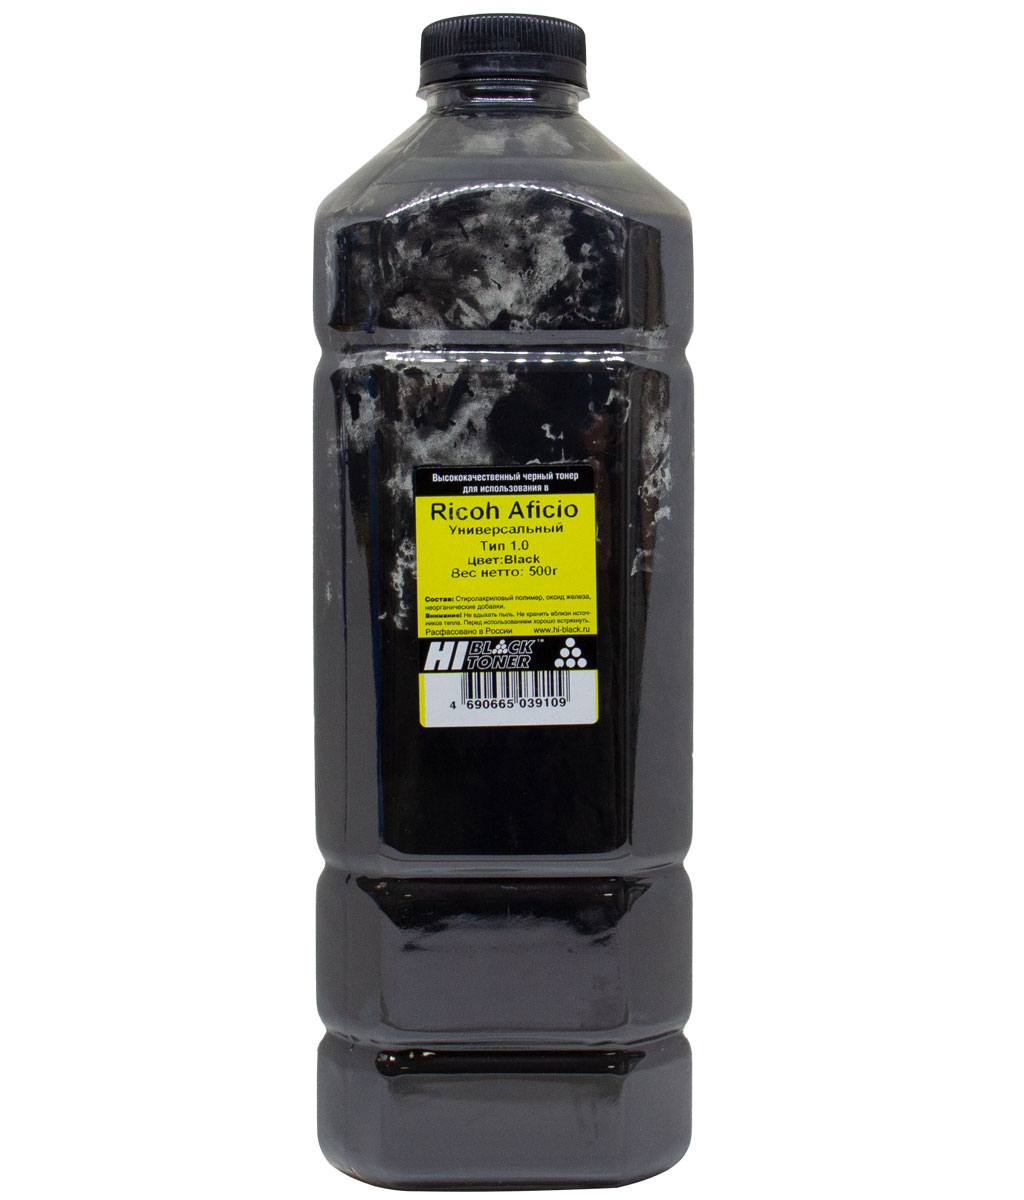 Тонер Hi-Black Тип 1.0, бутыль 500 г, черный, совместимый для Ricoh Aficio SP-C220/221/222/231/232/242/250/261DNw/311/312/320, Ipsio SP-C241/251/310/320/341/342, универсальный (20111801)